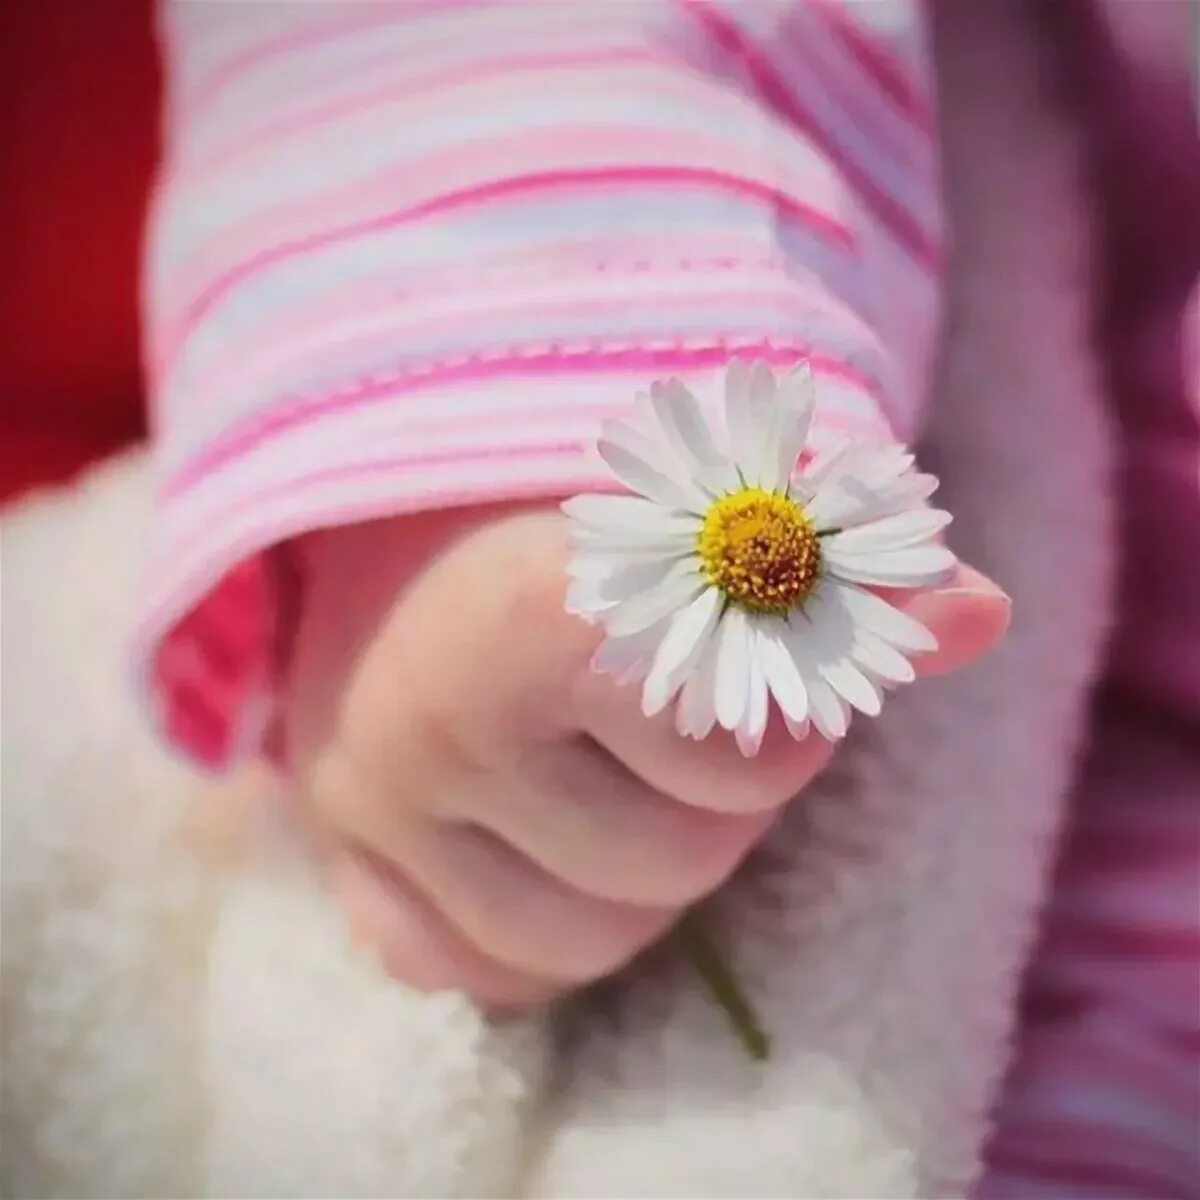 Цветы для малышей. Дети с цветами. Красивые маленькие цветочки. Ребенок с цветком в руках. Новорожденный без мамы